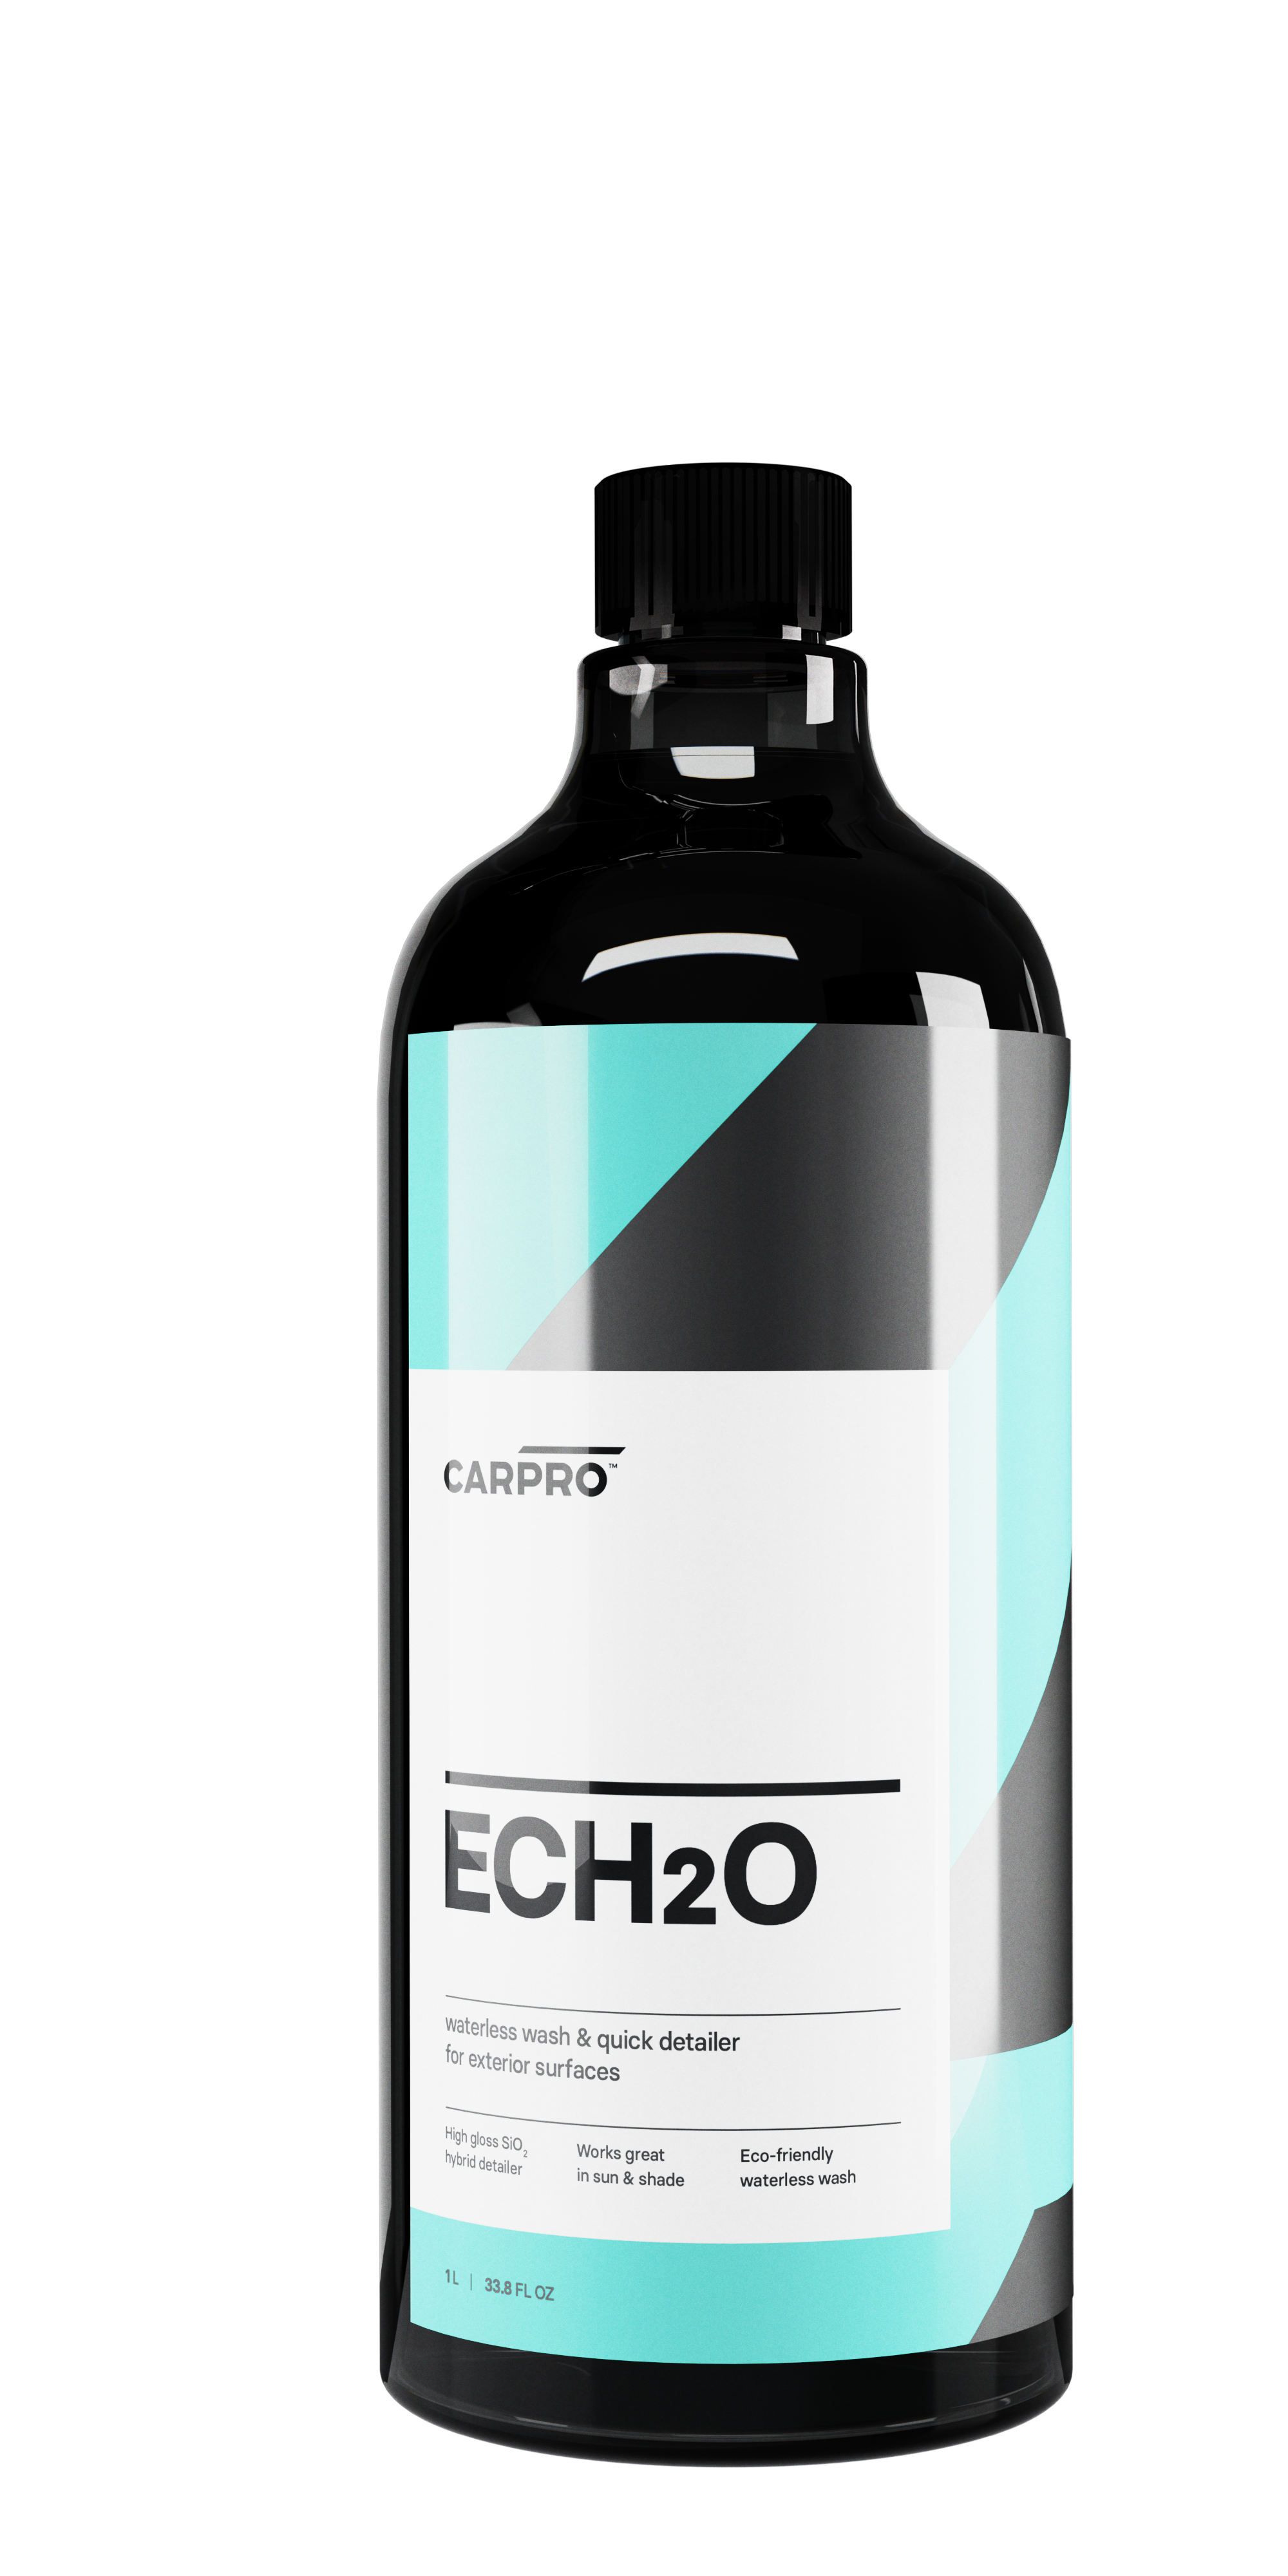 CARPRO EcH2o 1L - Nettoyant sans eau avec SiO2